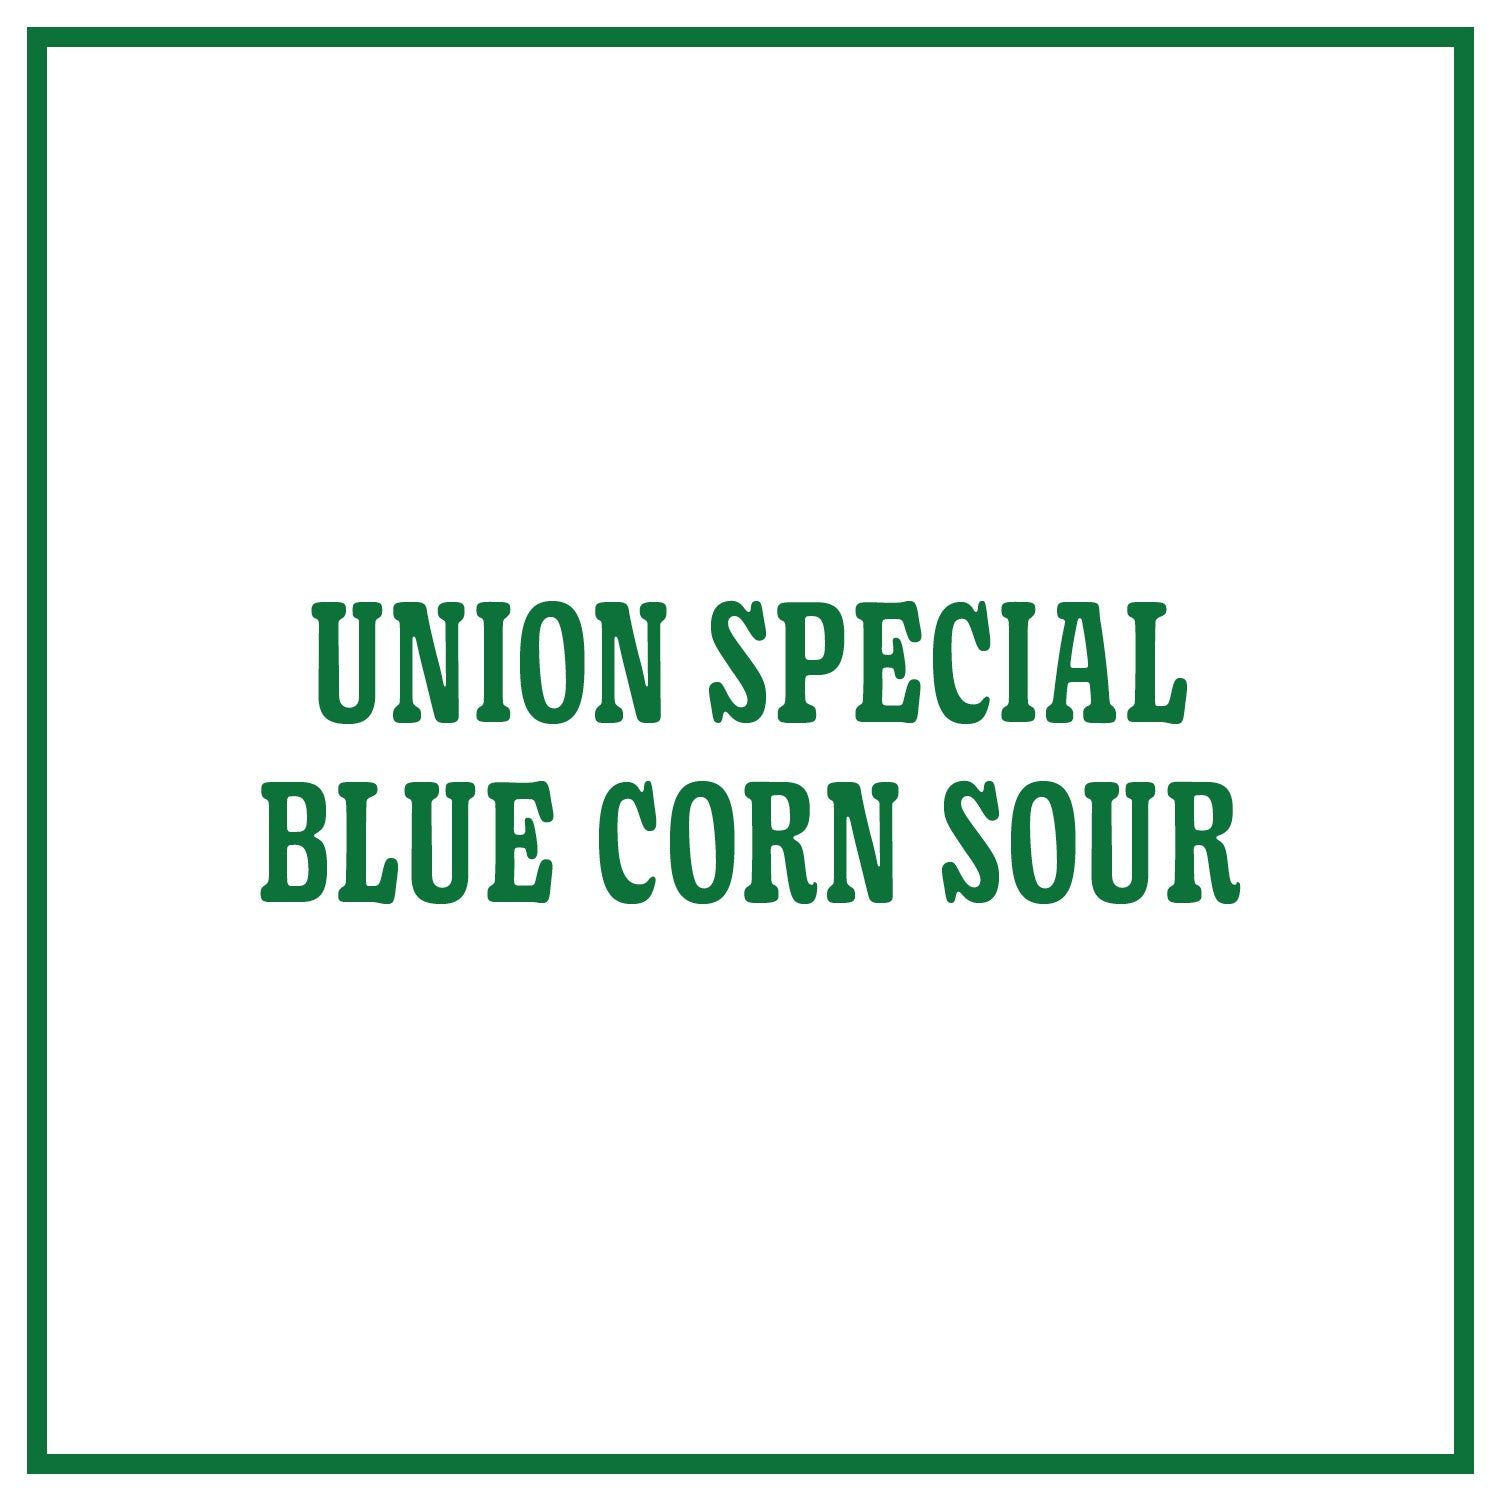 Union Special Blue Corn Sour